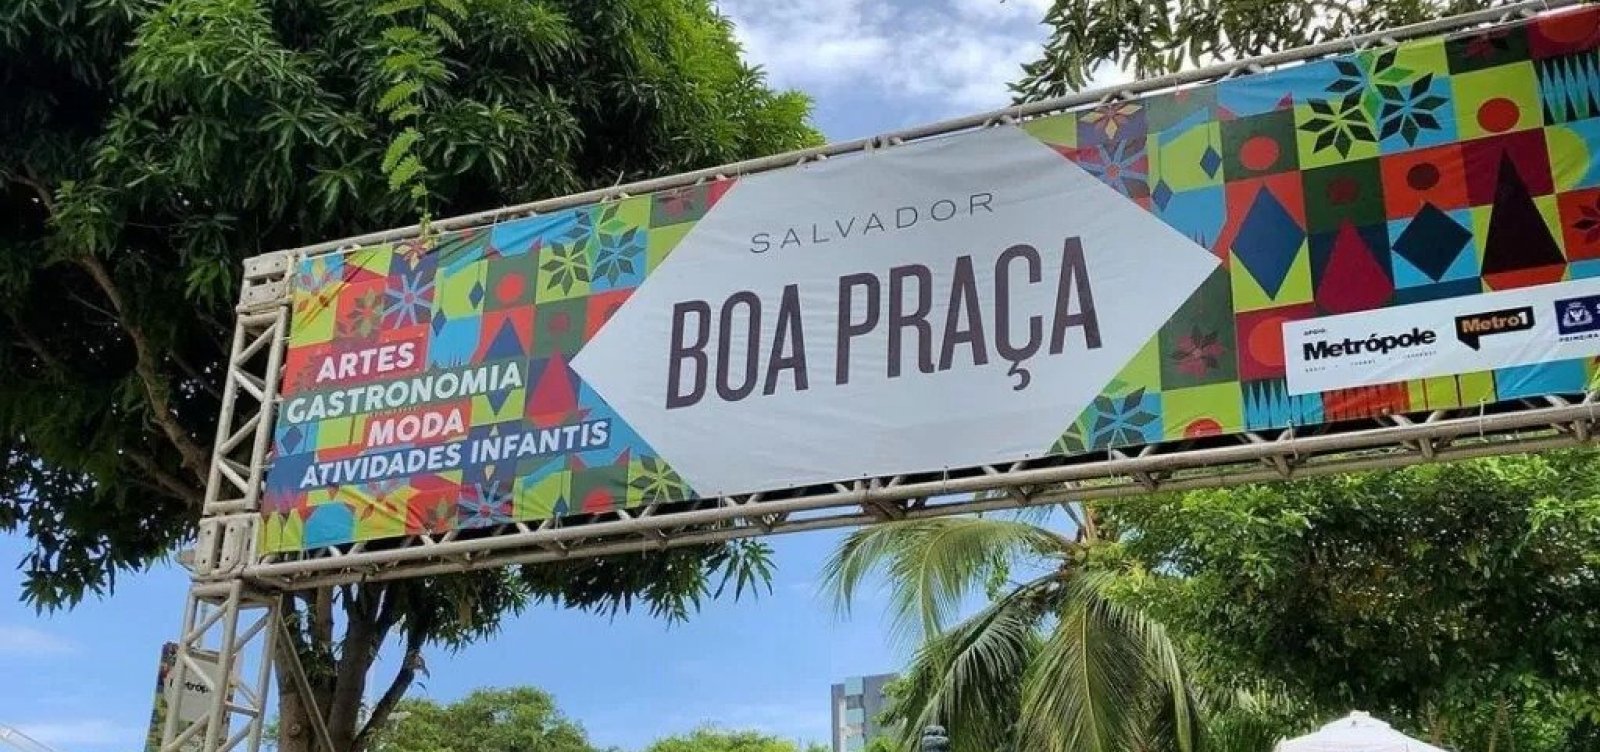 'Salvador Boa Praça' retoma programação com quatro edições em 2022